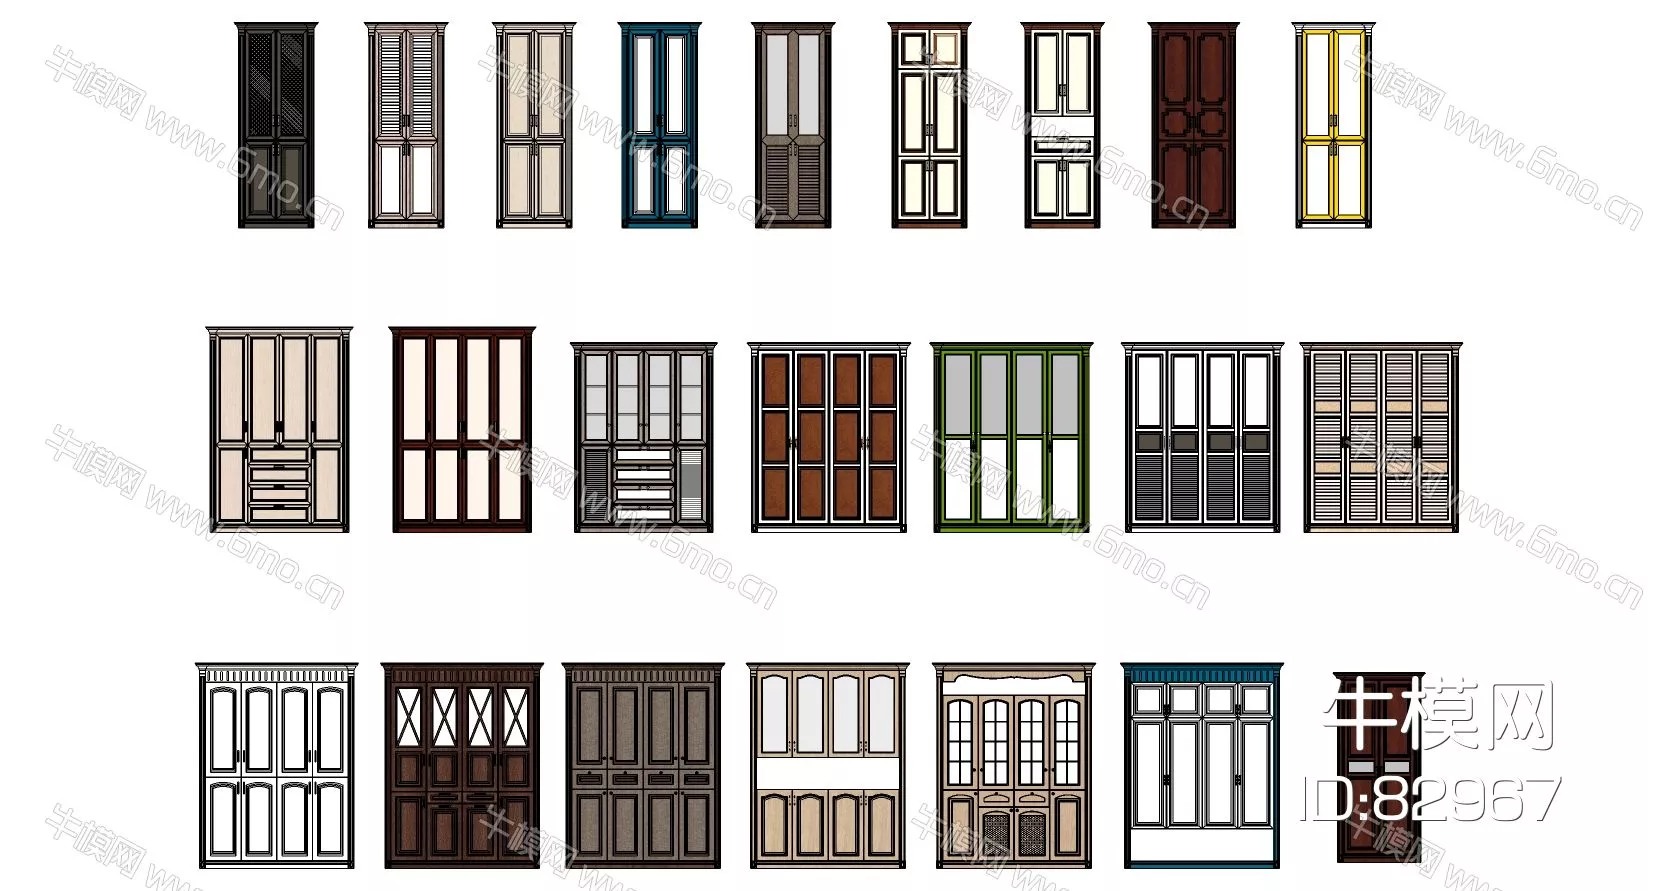 AMERICAN DOOR AND WINDOWS - SKETCHUP 3D MODEL - VRAY - 82967